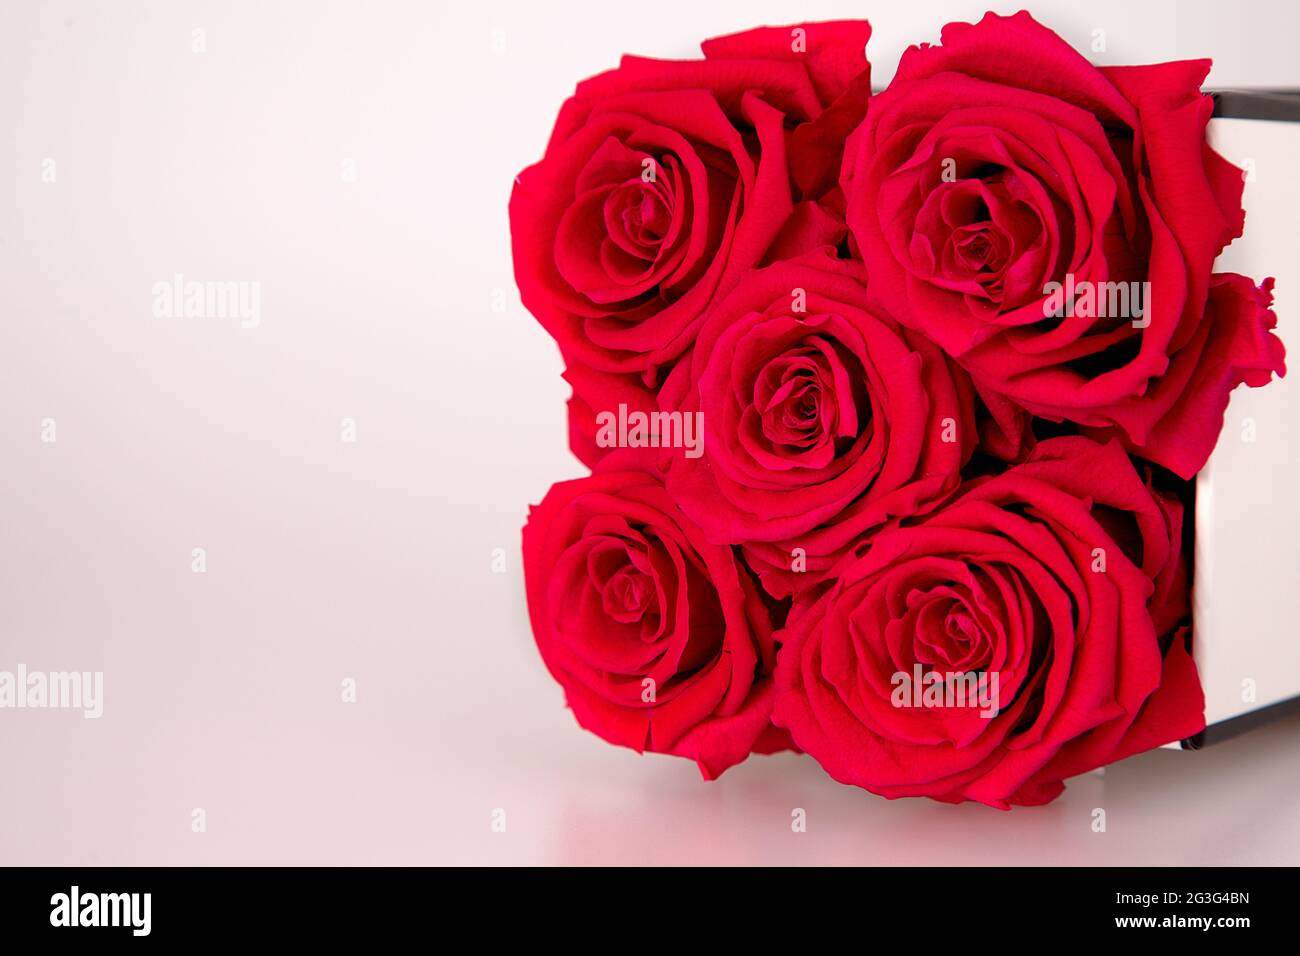 Rote infinity Rosen auf dem weißen Hintergrund Stock Photo